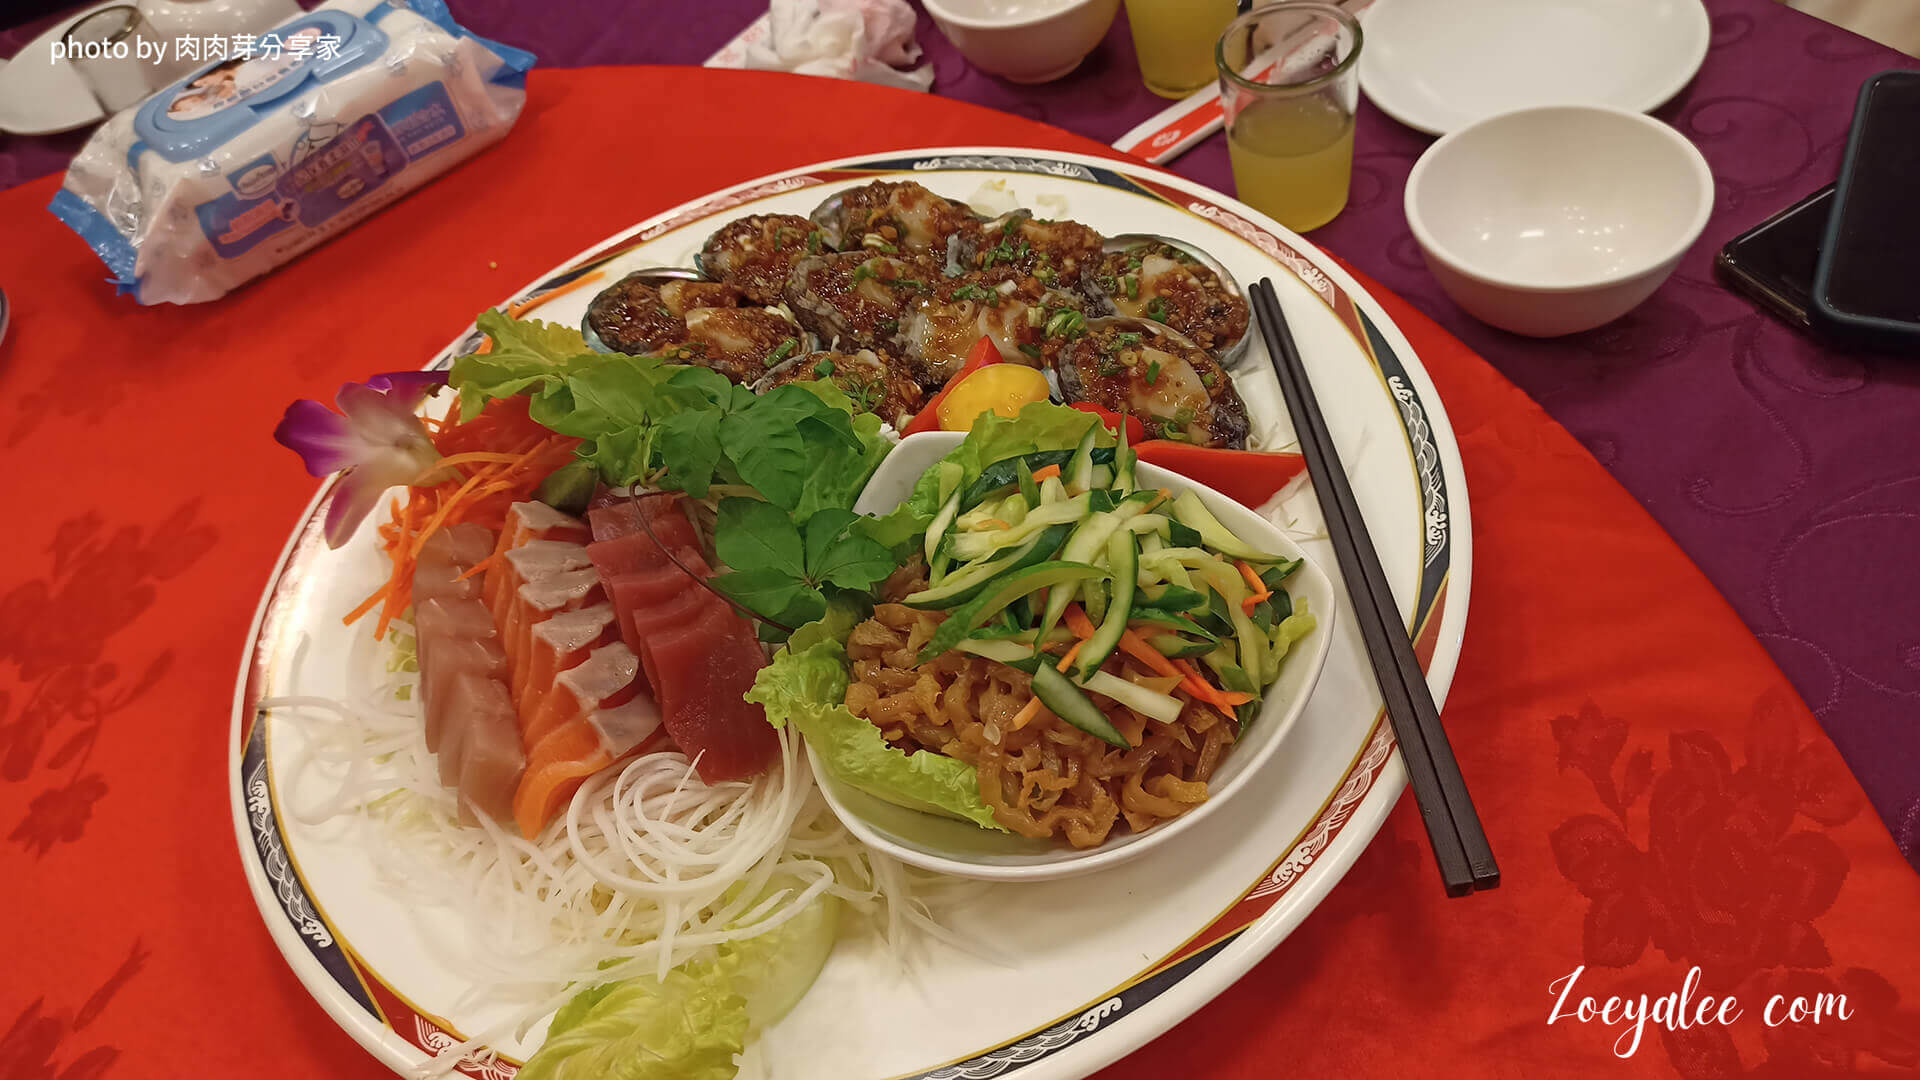 桃園八德,項目包含喜宴,聚餐,外燴的餐廳-上海怹餐廳先上菜的冷盤